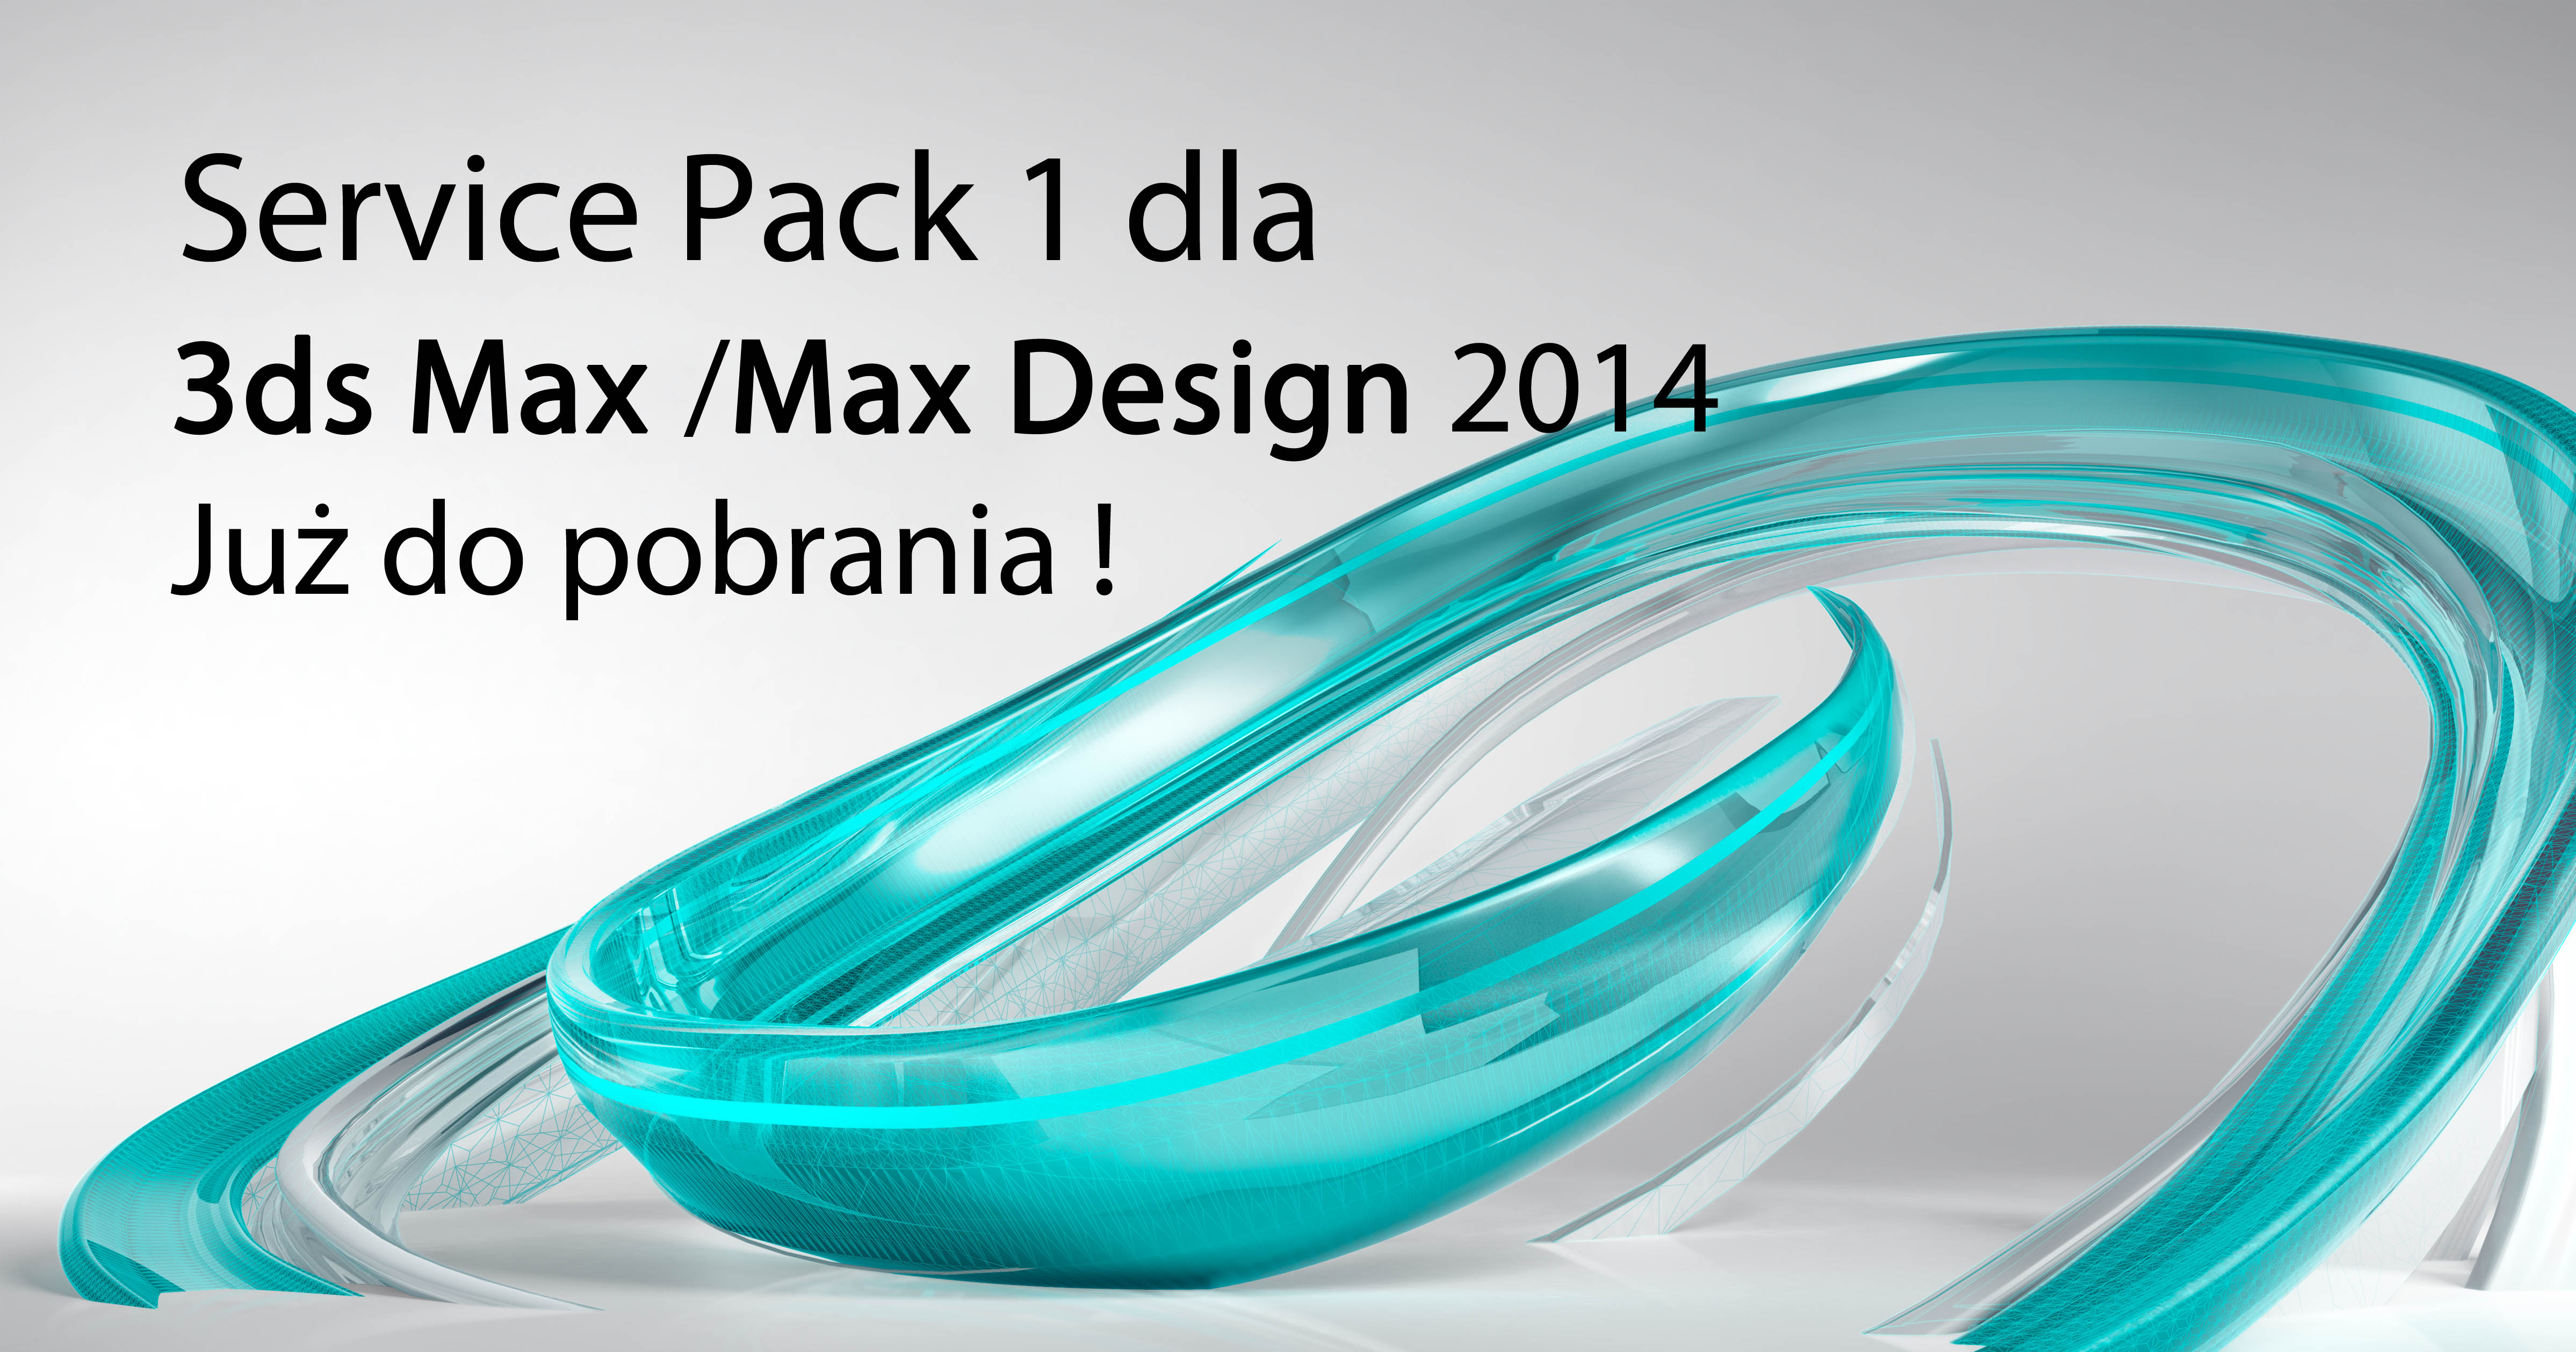 Max design value 6619253 max design volume